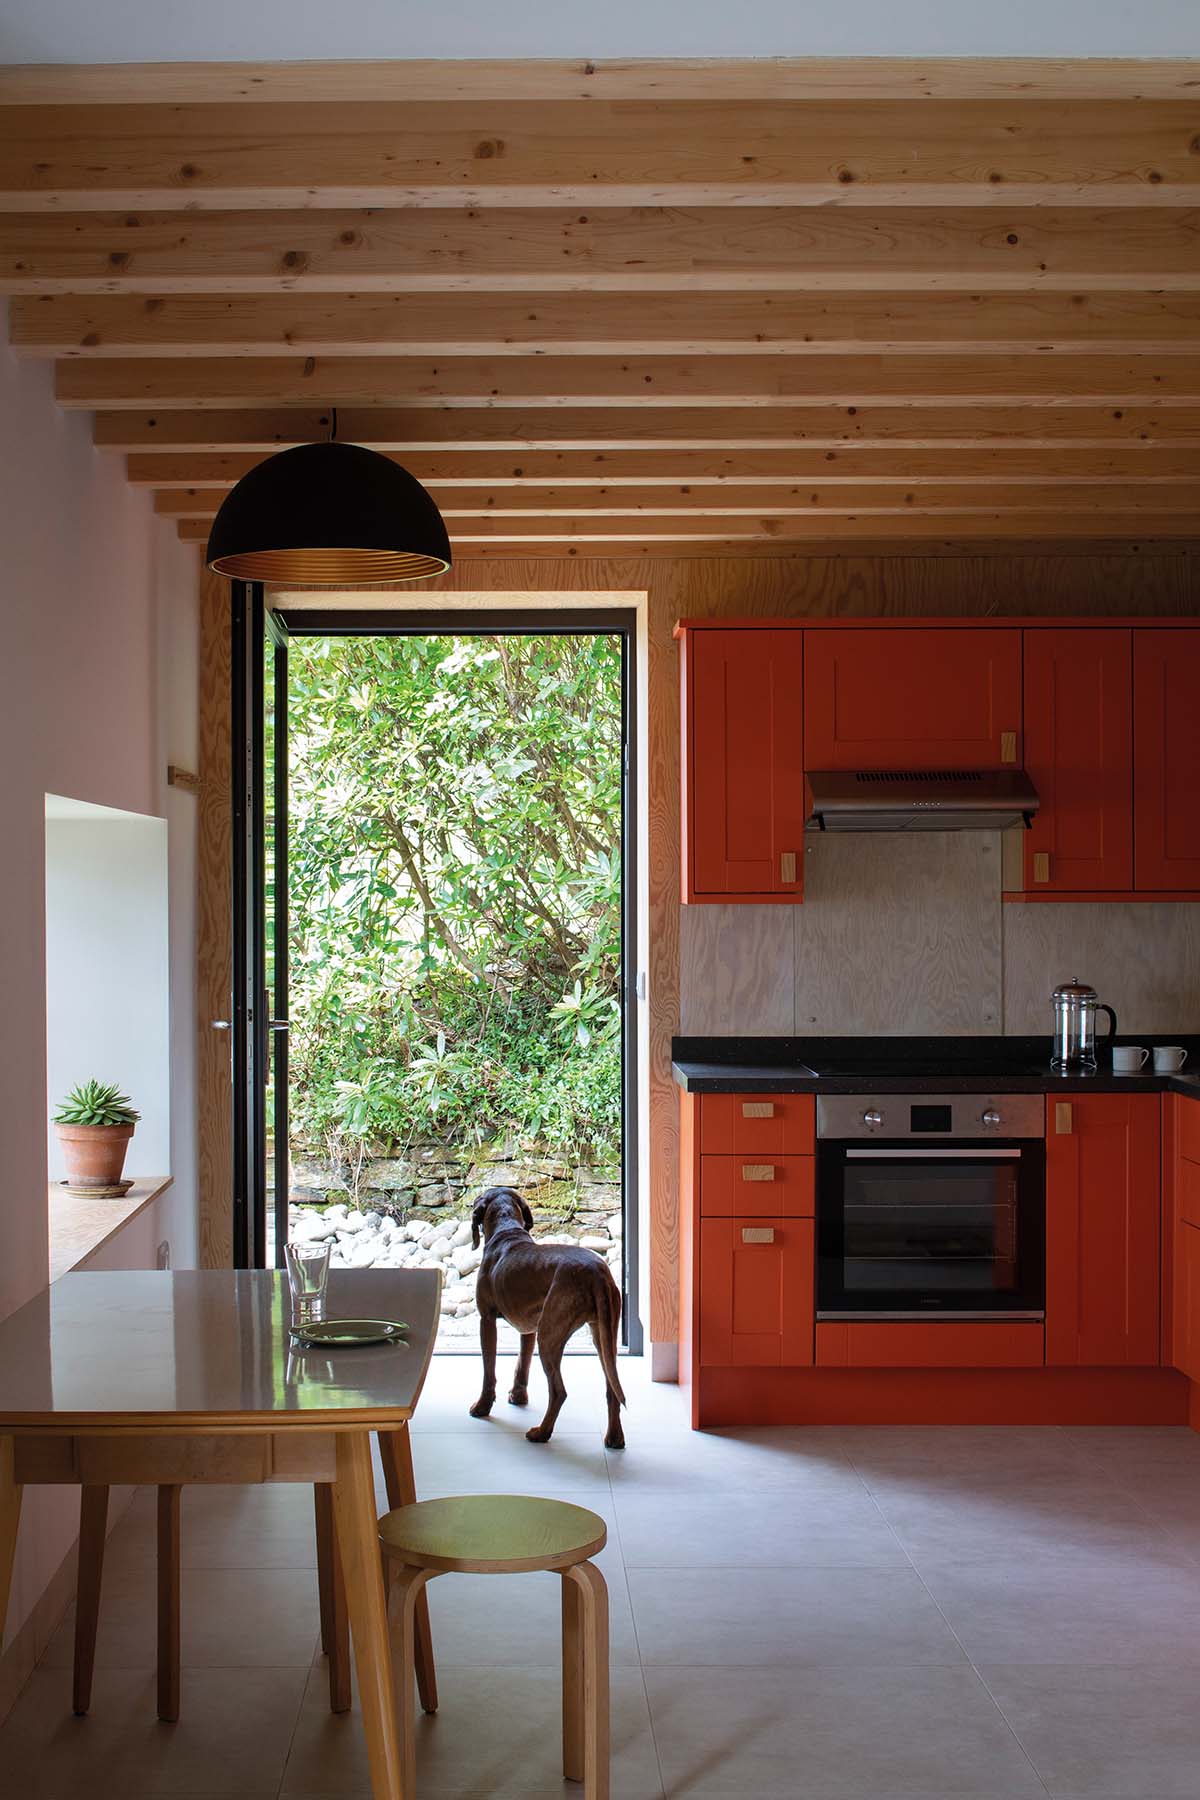 Modern kitchen with dog